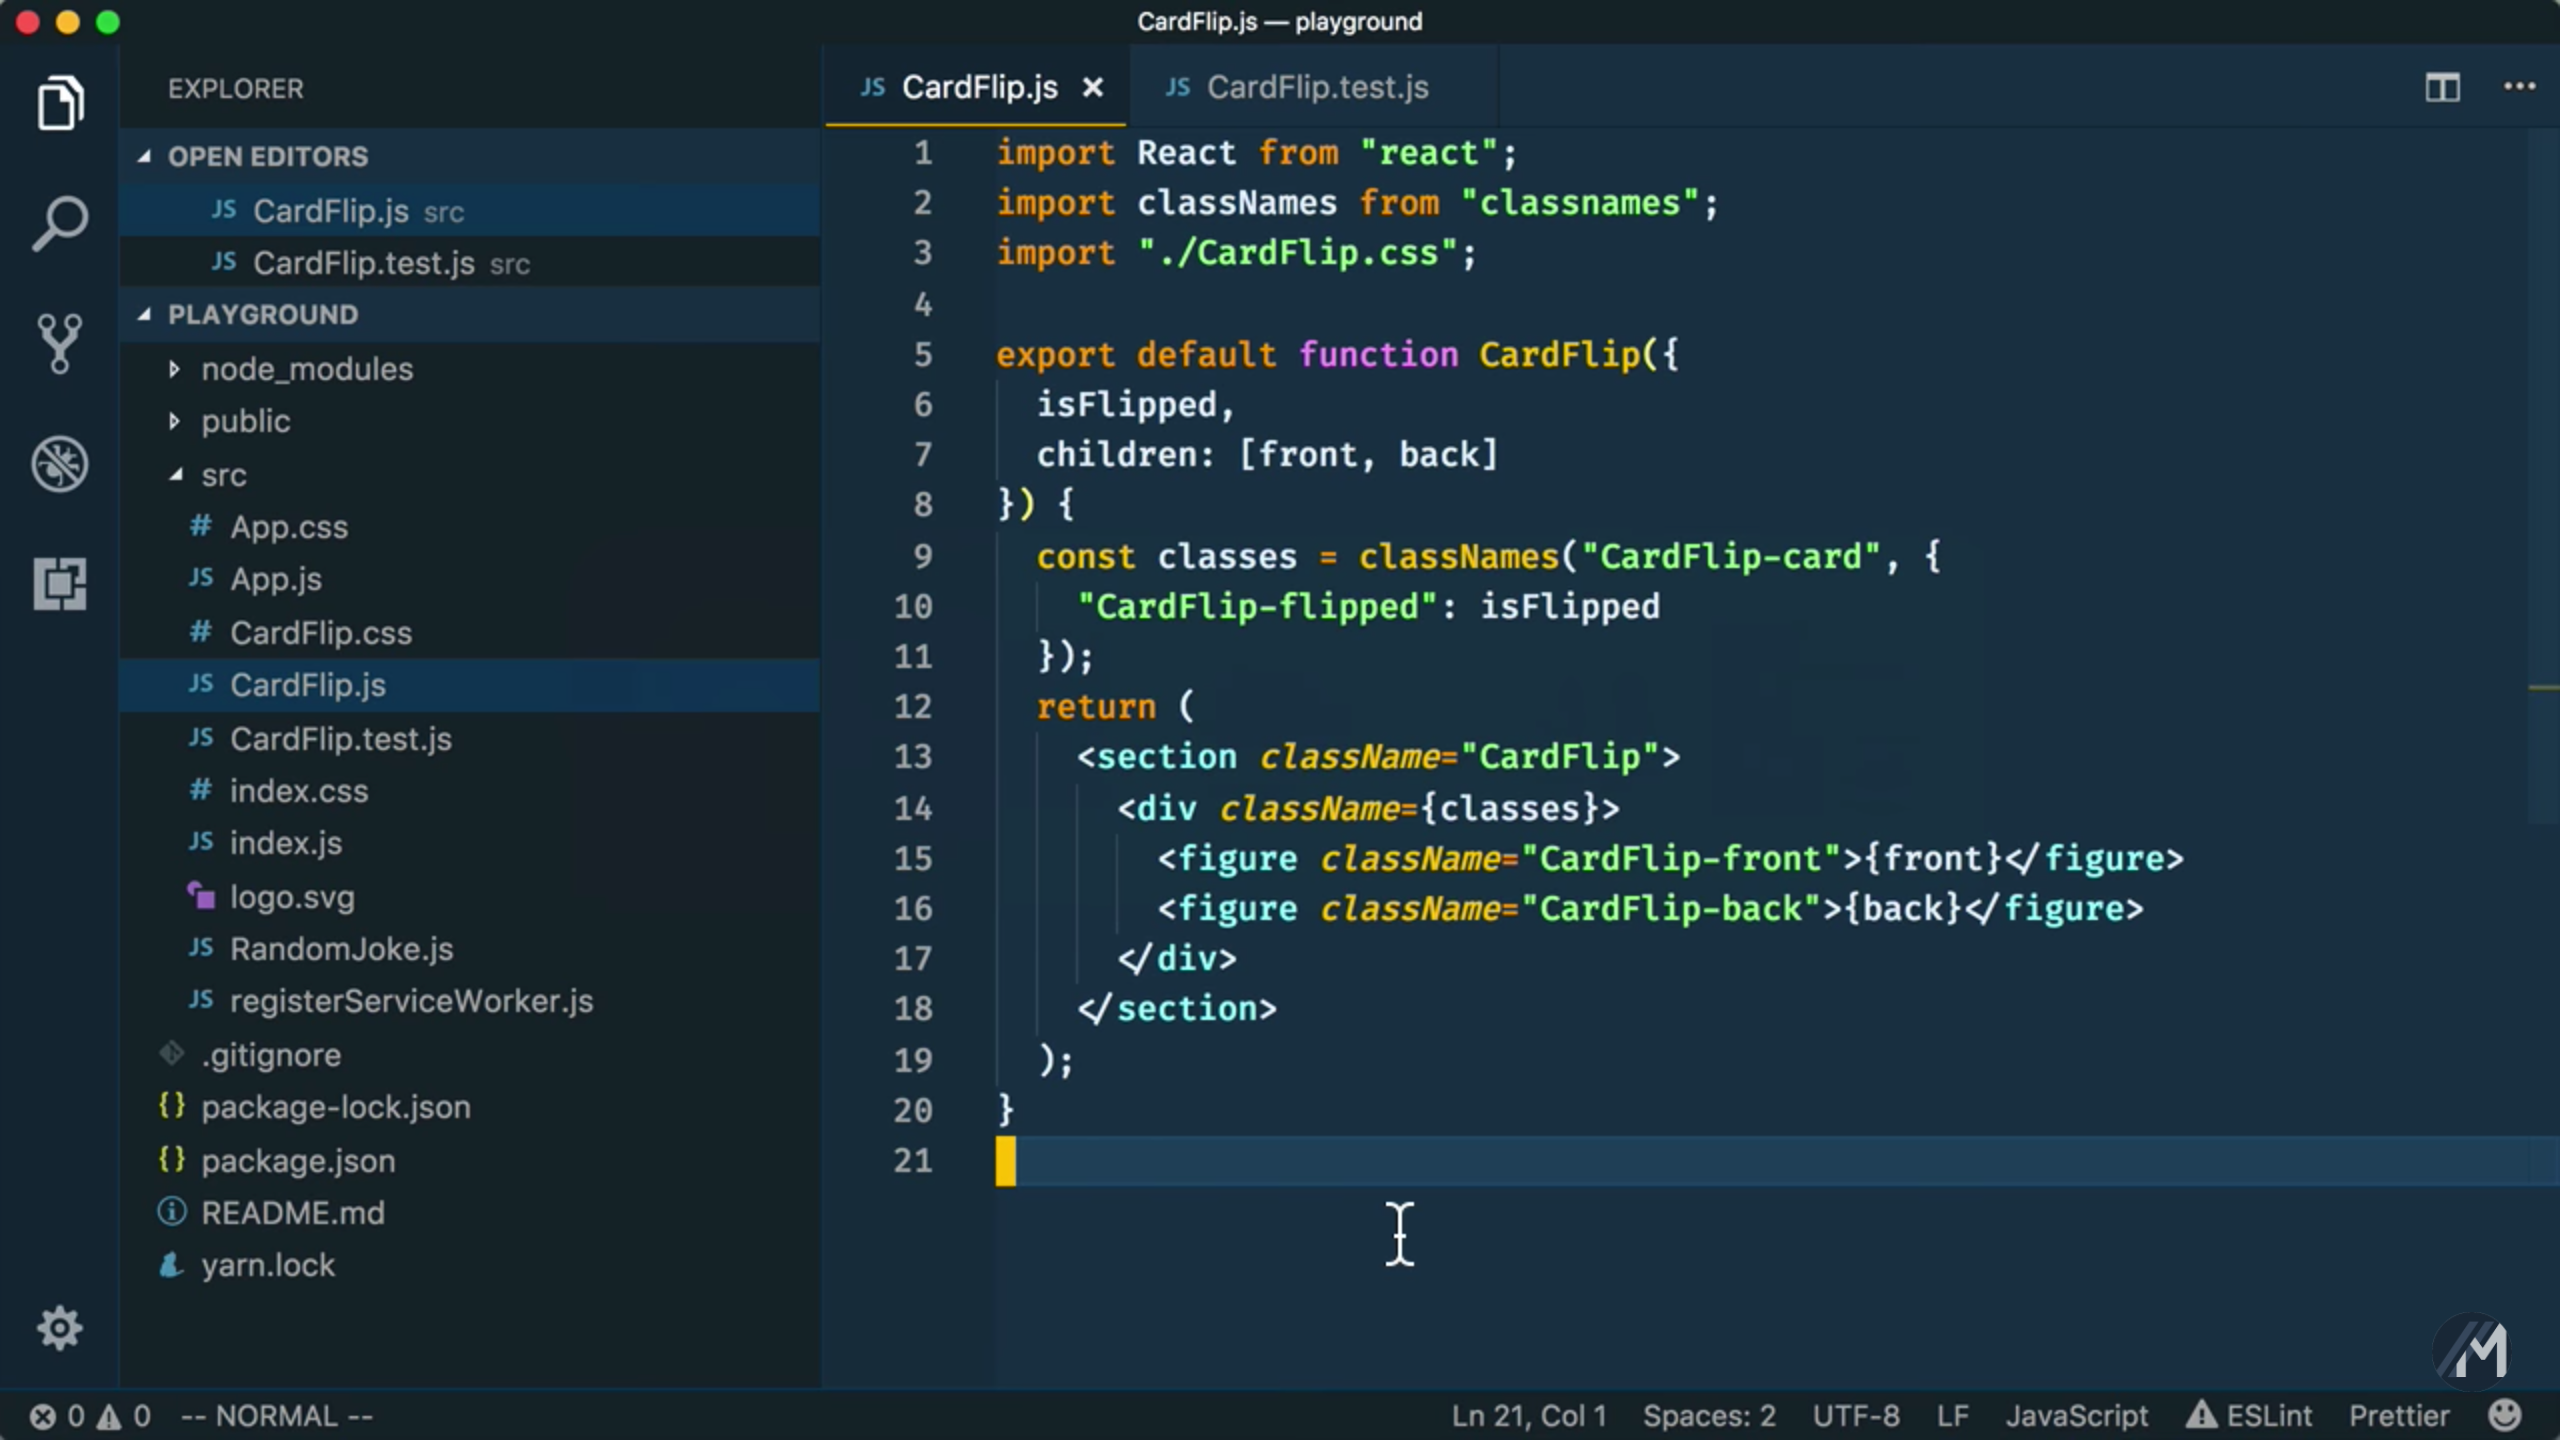 Screenshot of Code